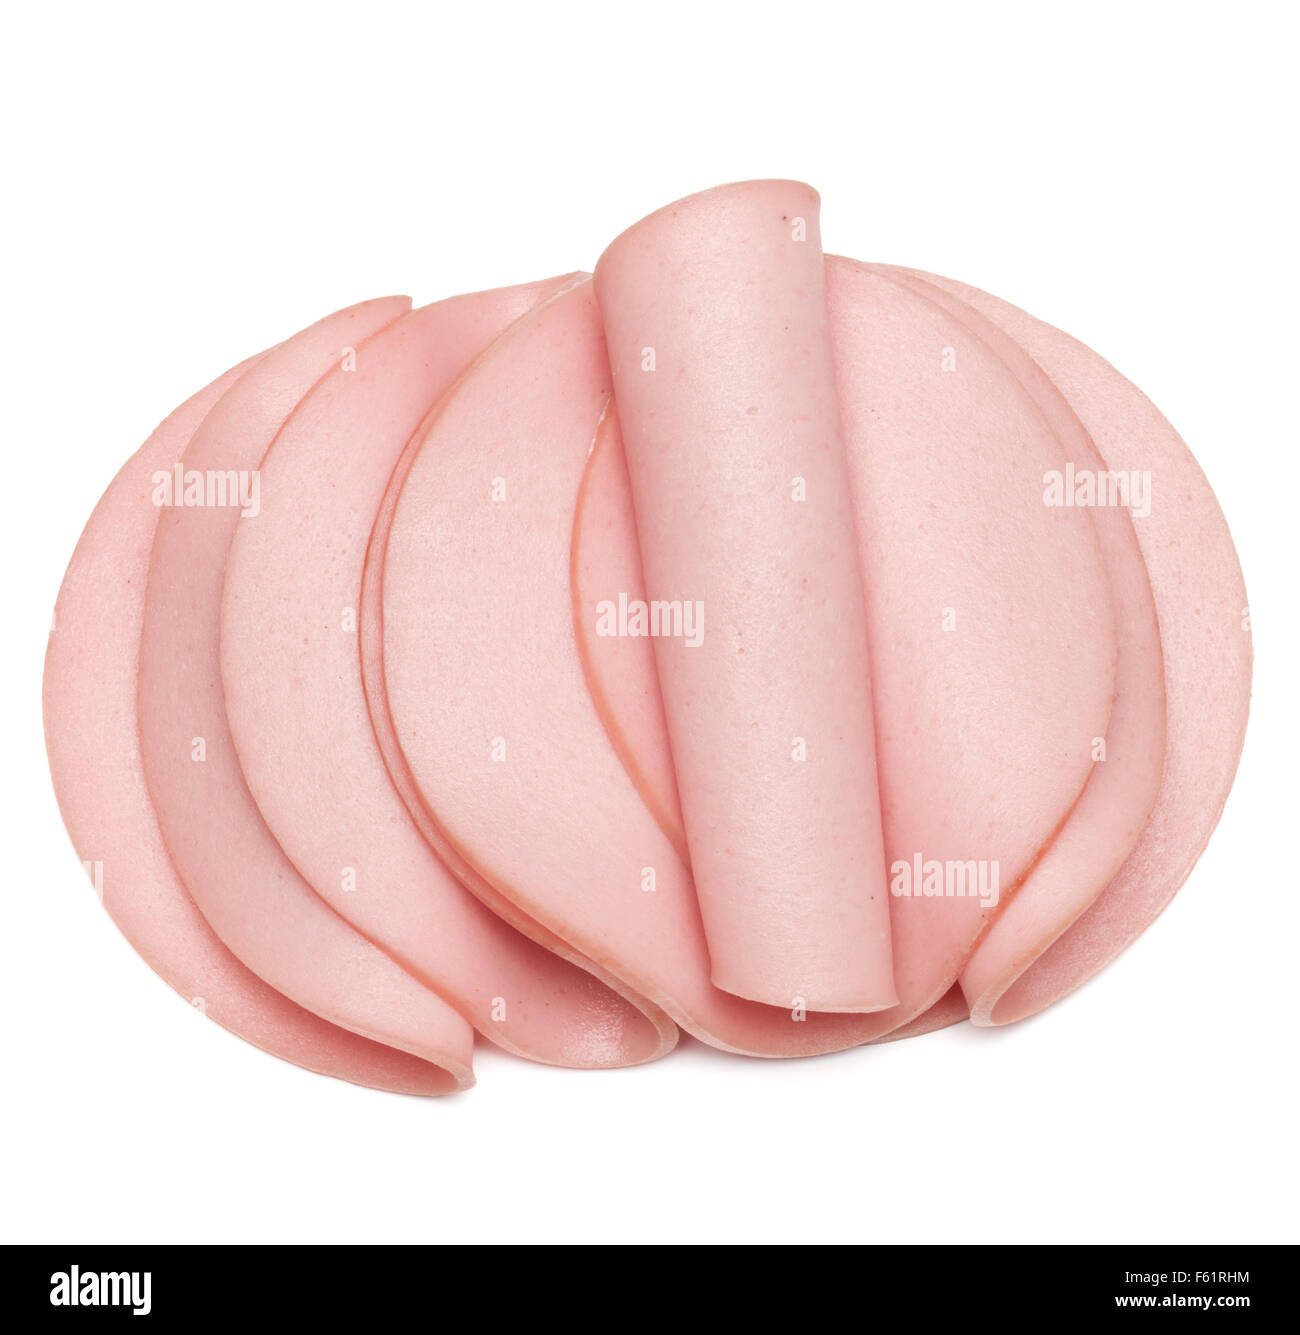 Kochschinken gekochte Wurst oder gerollte Bologna Scheiben isoliert auf weißem Hintergrund Ausschnitt Stockfoto